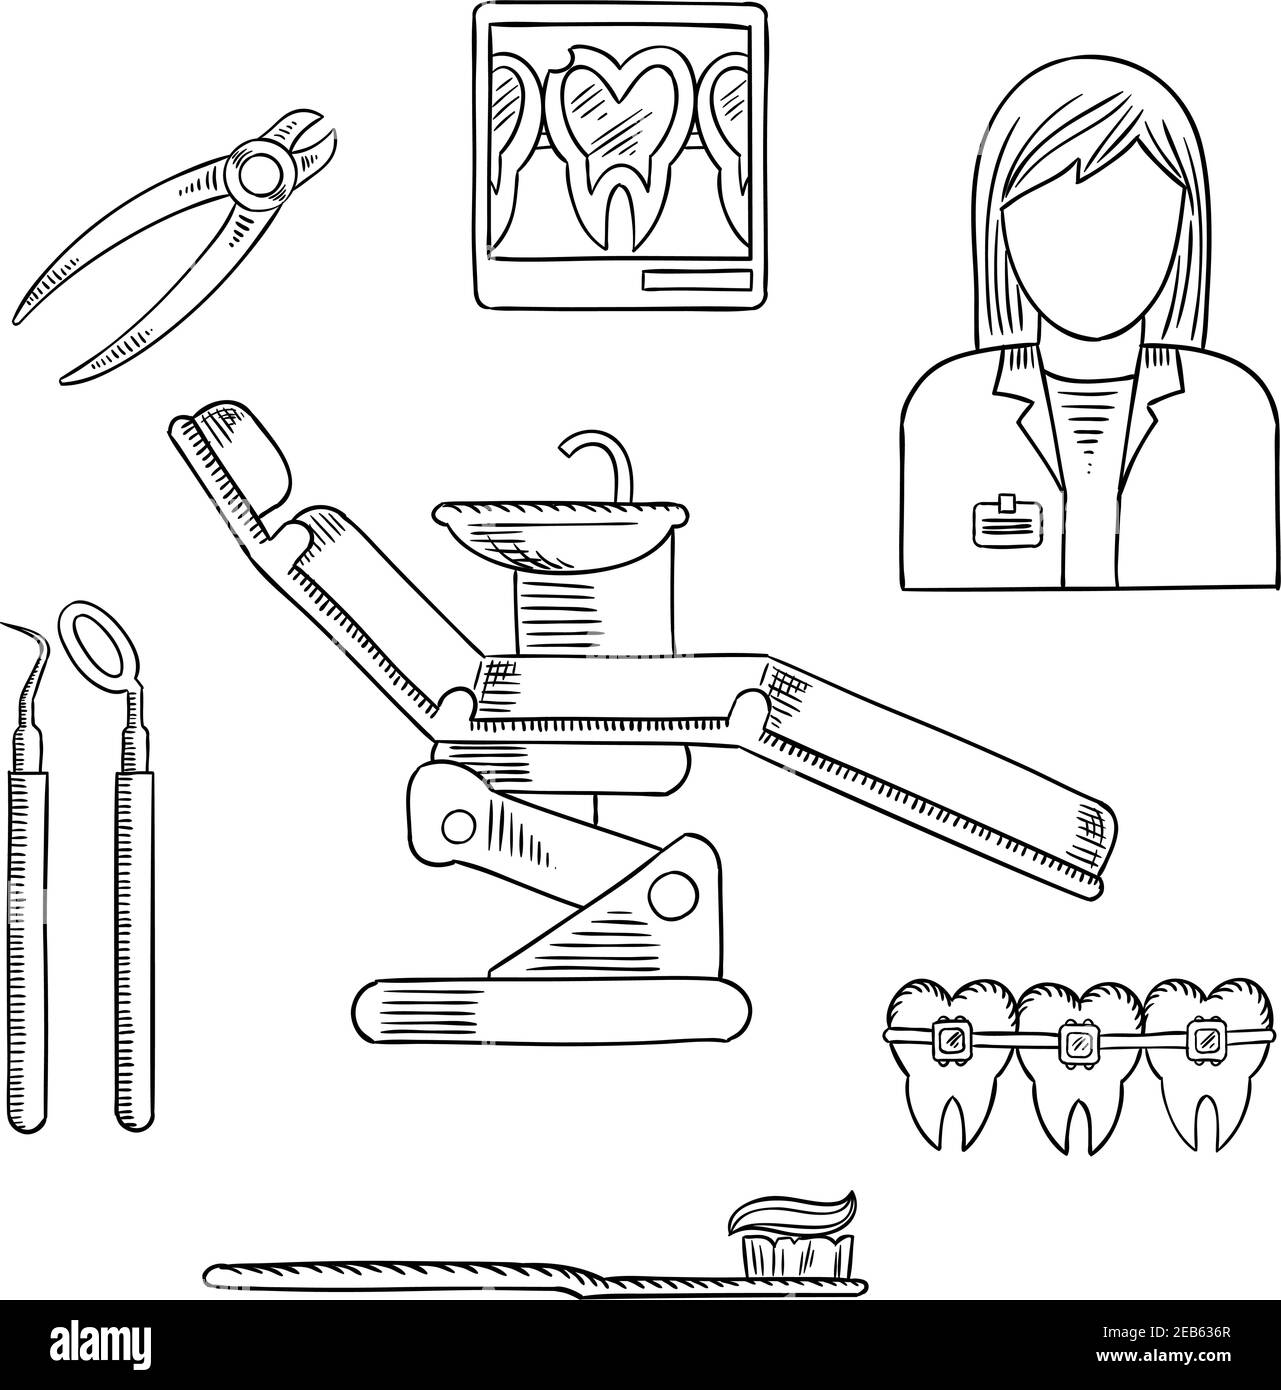 Рисунок по профессиям зубной